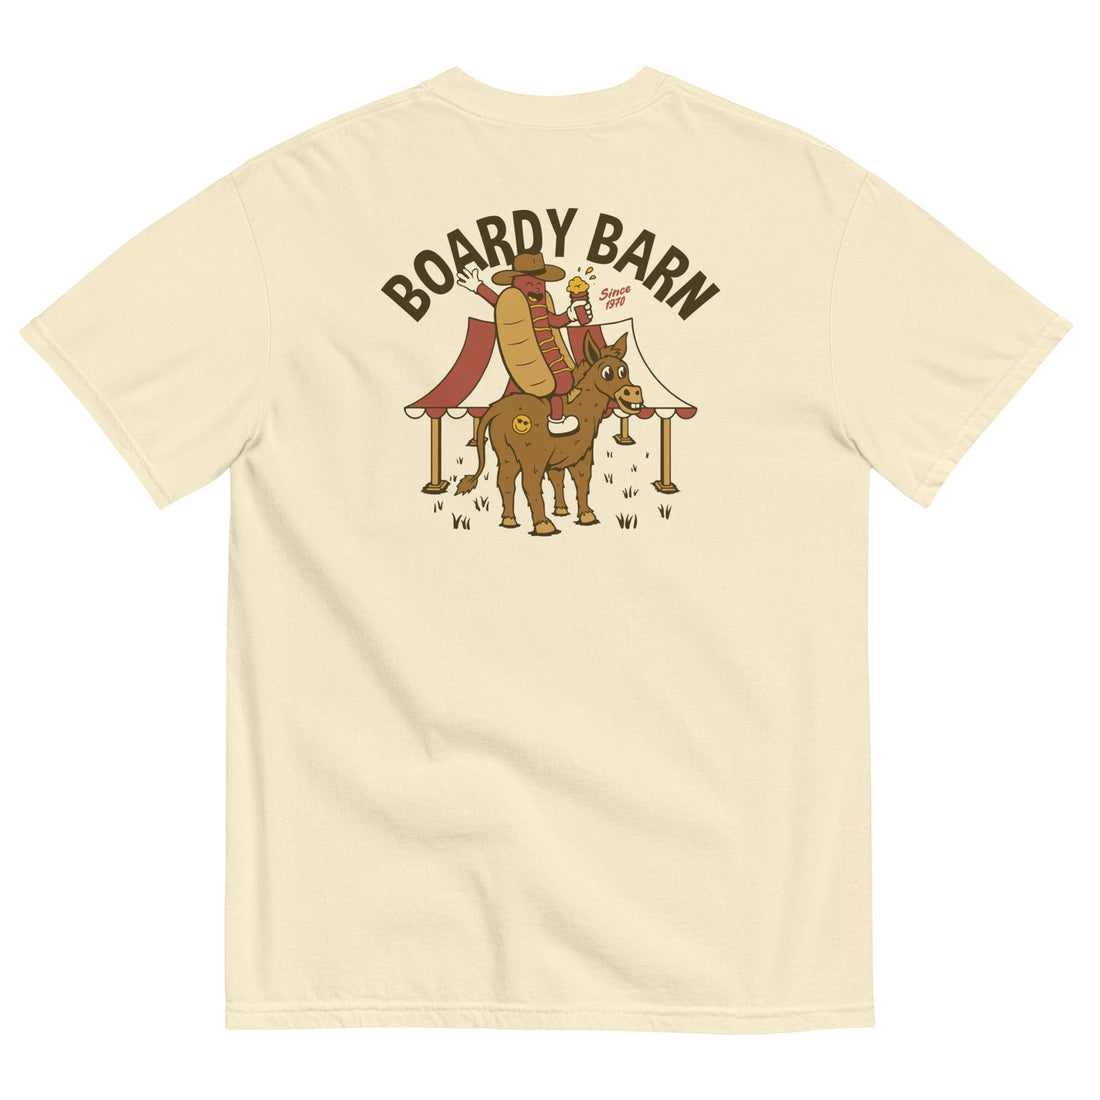 
  
  Dog-n-Donkey Boardy Barn Unisex garment-dyed heavyweight t-shirt
  
